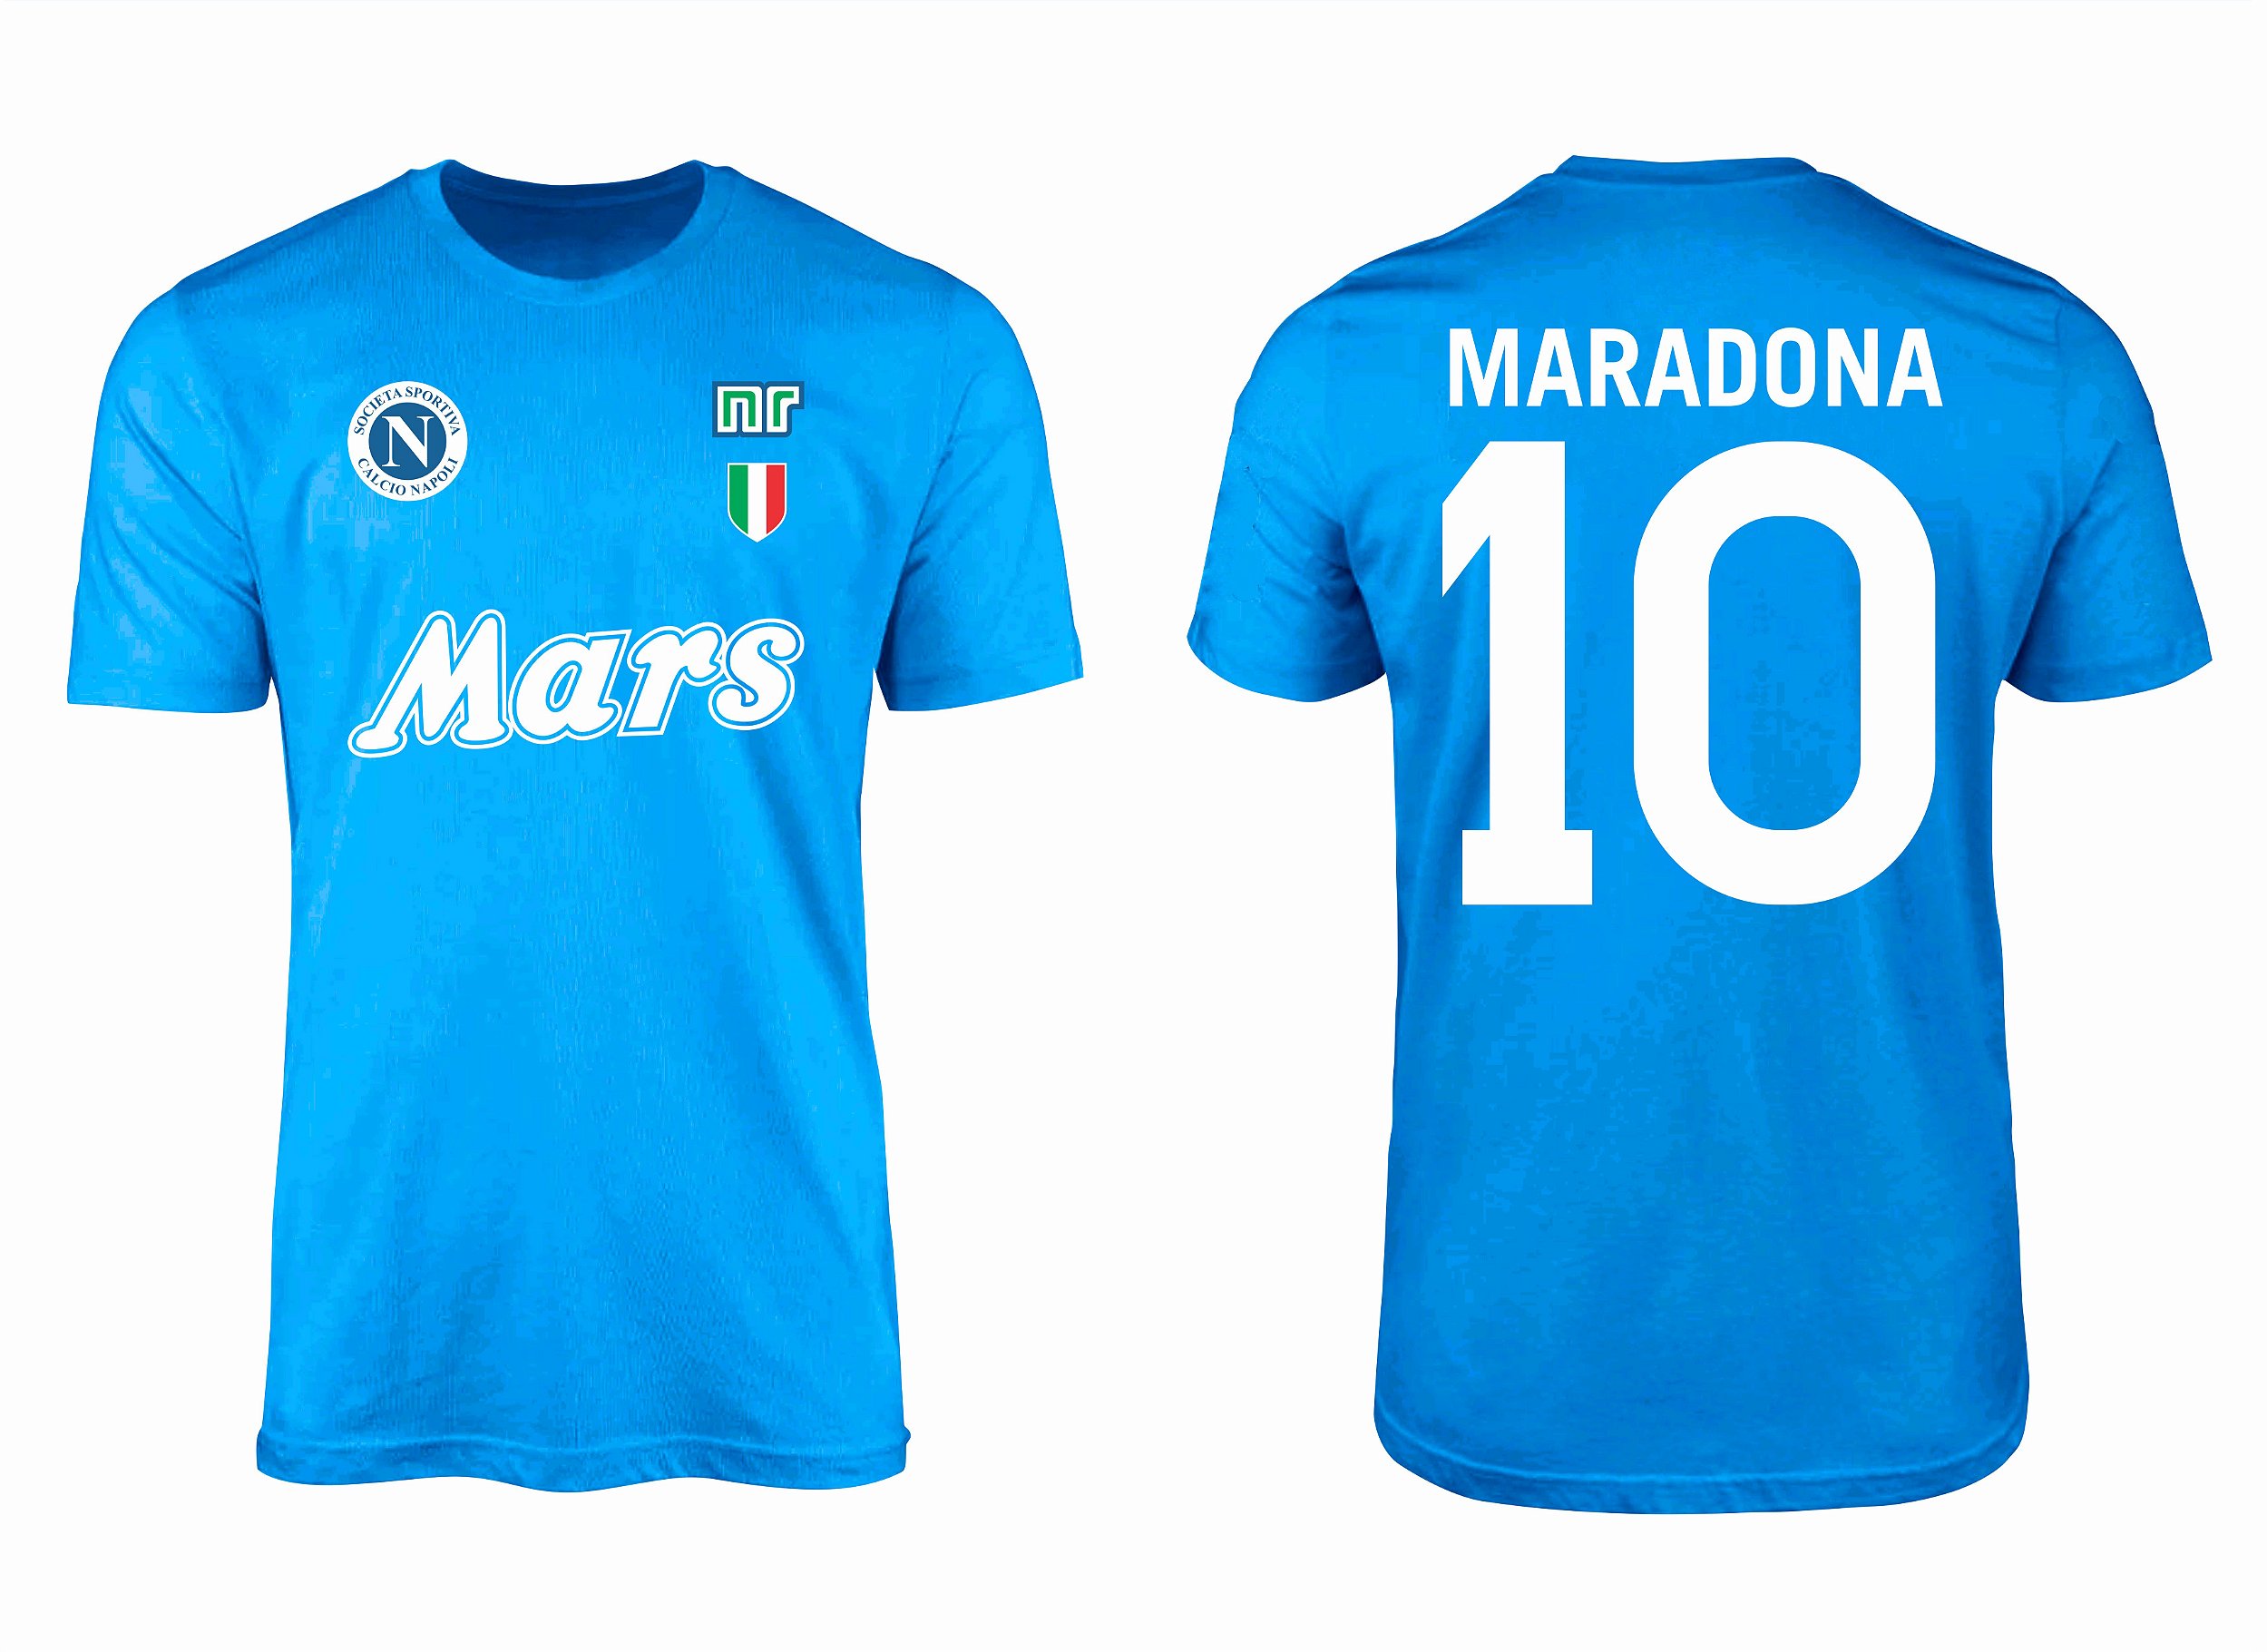 Camisa Retrô Napoli Maradona Diez - RetroEsporte - Paixão pelo clássico